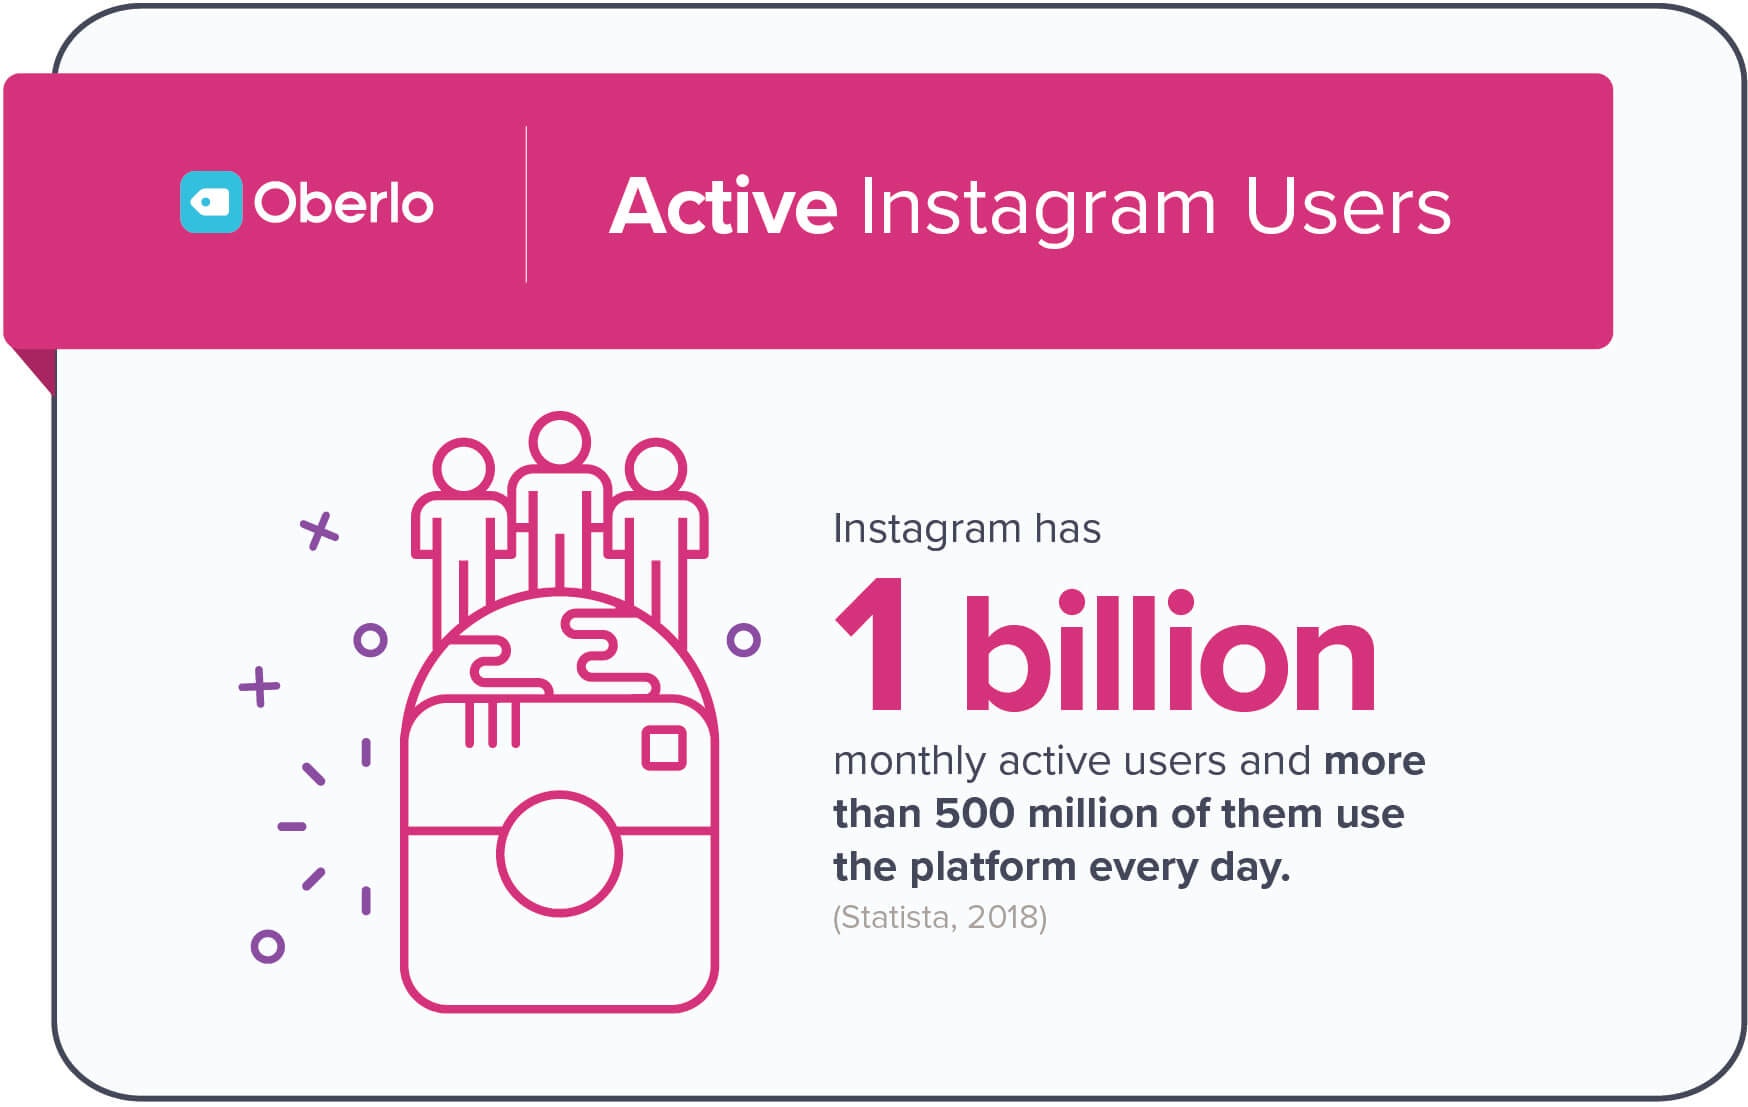 Instagramilla on päivittäin 500 miljoonaa aktiivista käyttäjää